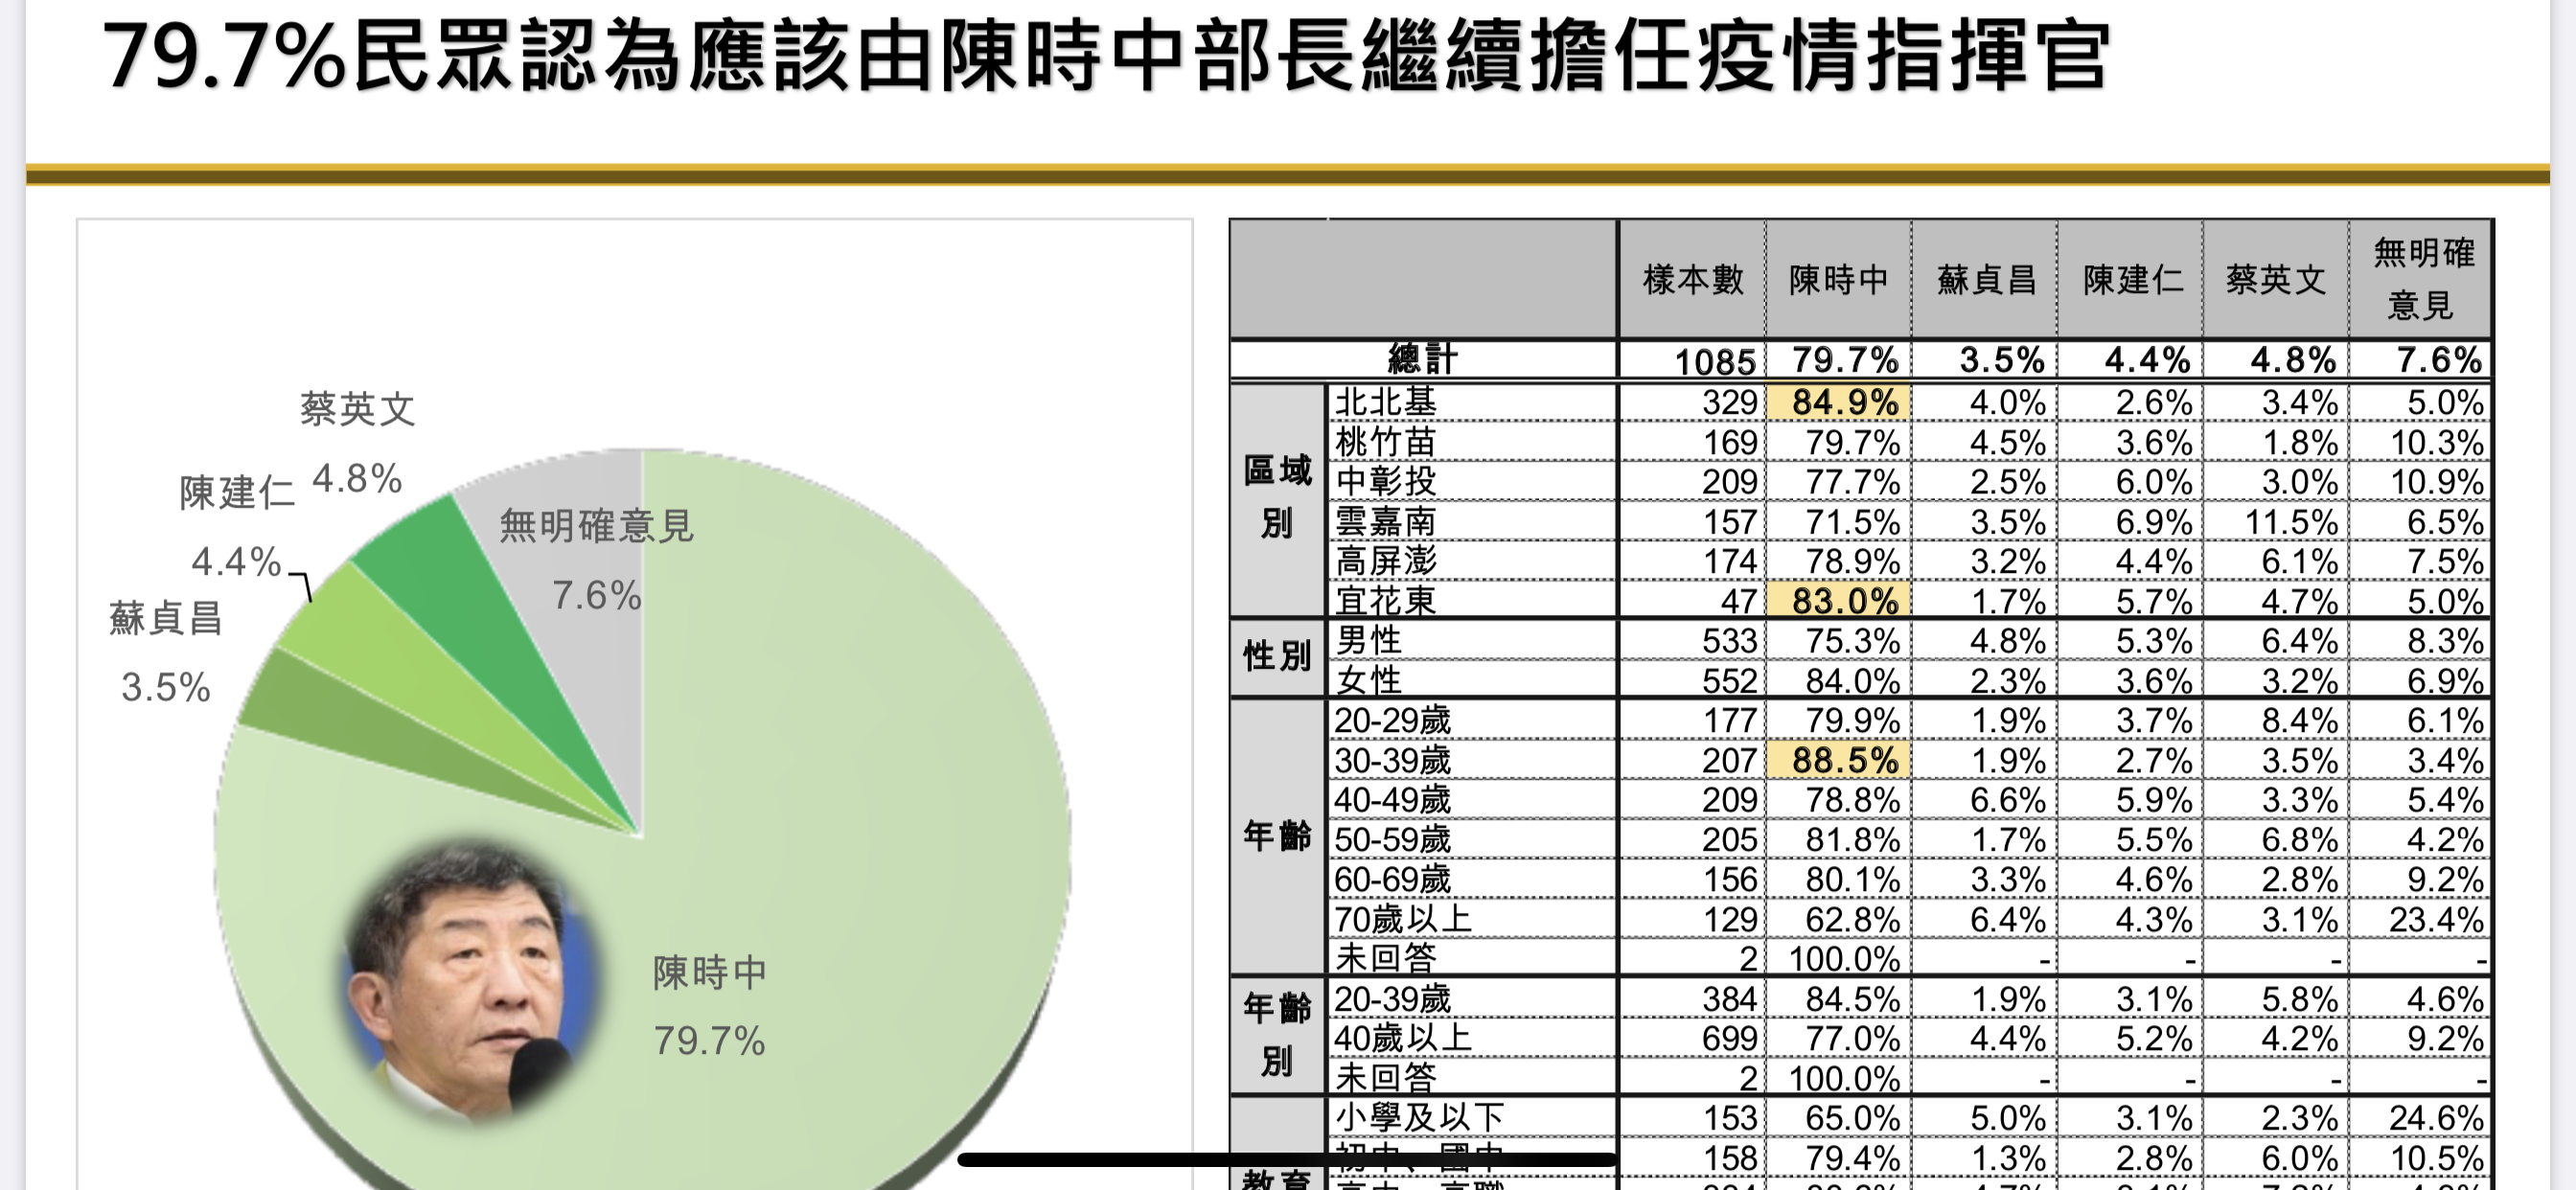 時力政情報告：肺炎紓困以減稅優先 七成四支持護照英文名改Taiwan